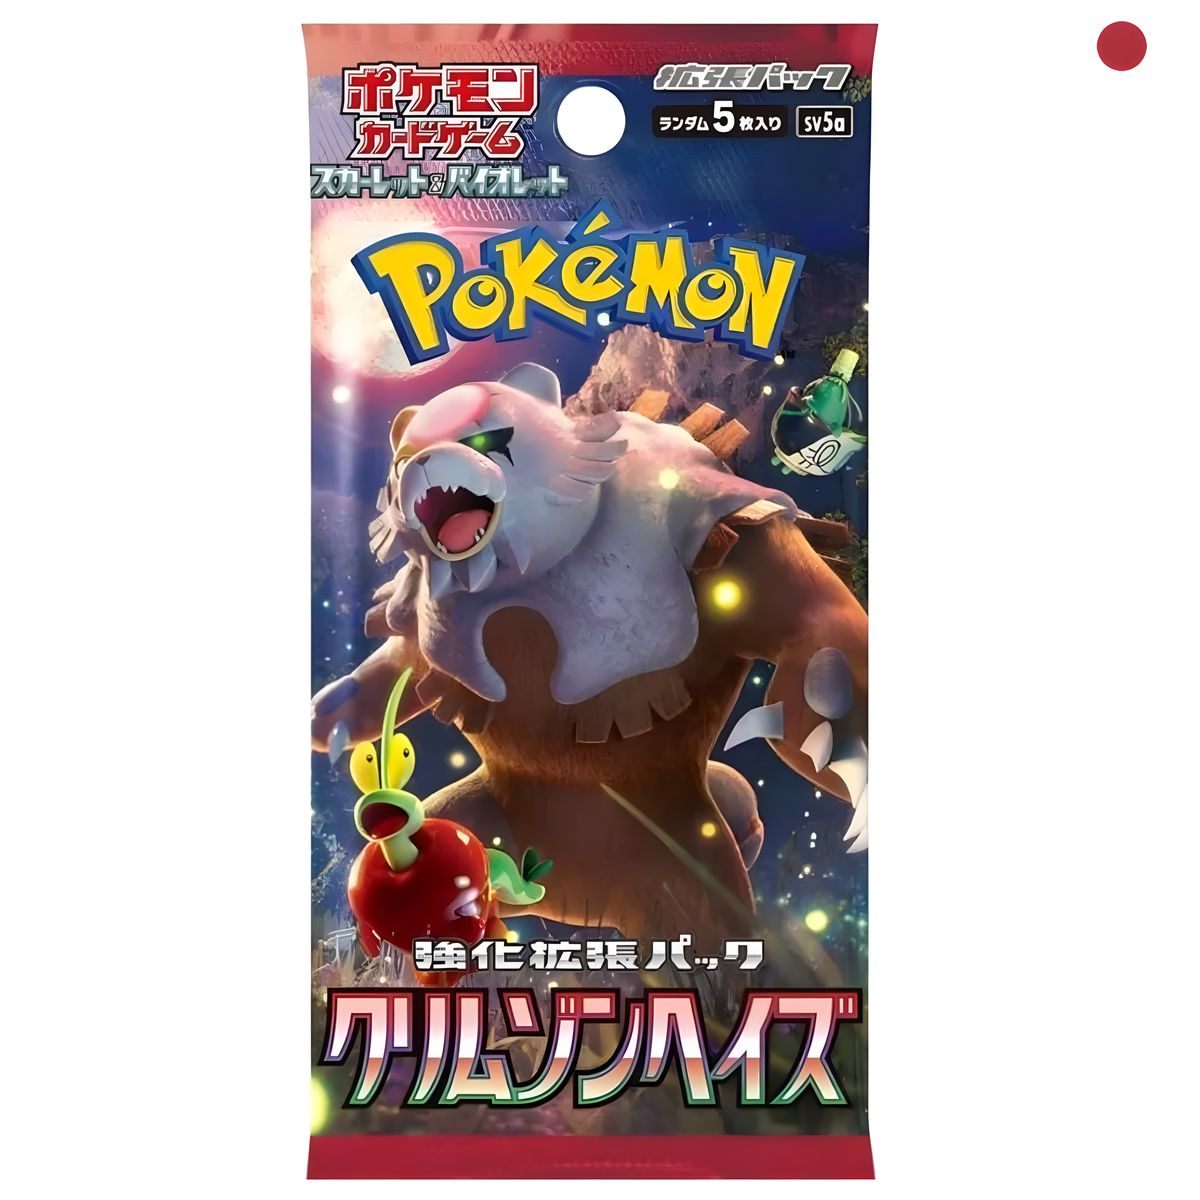 Pokémon - Crimson Haze sv5a Booster japanisch